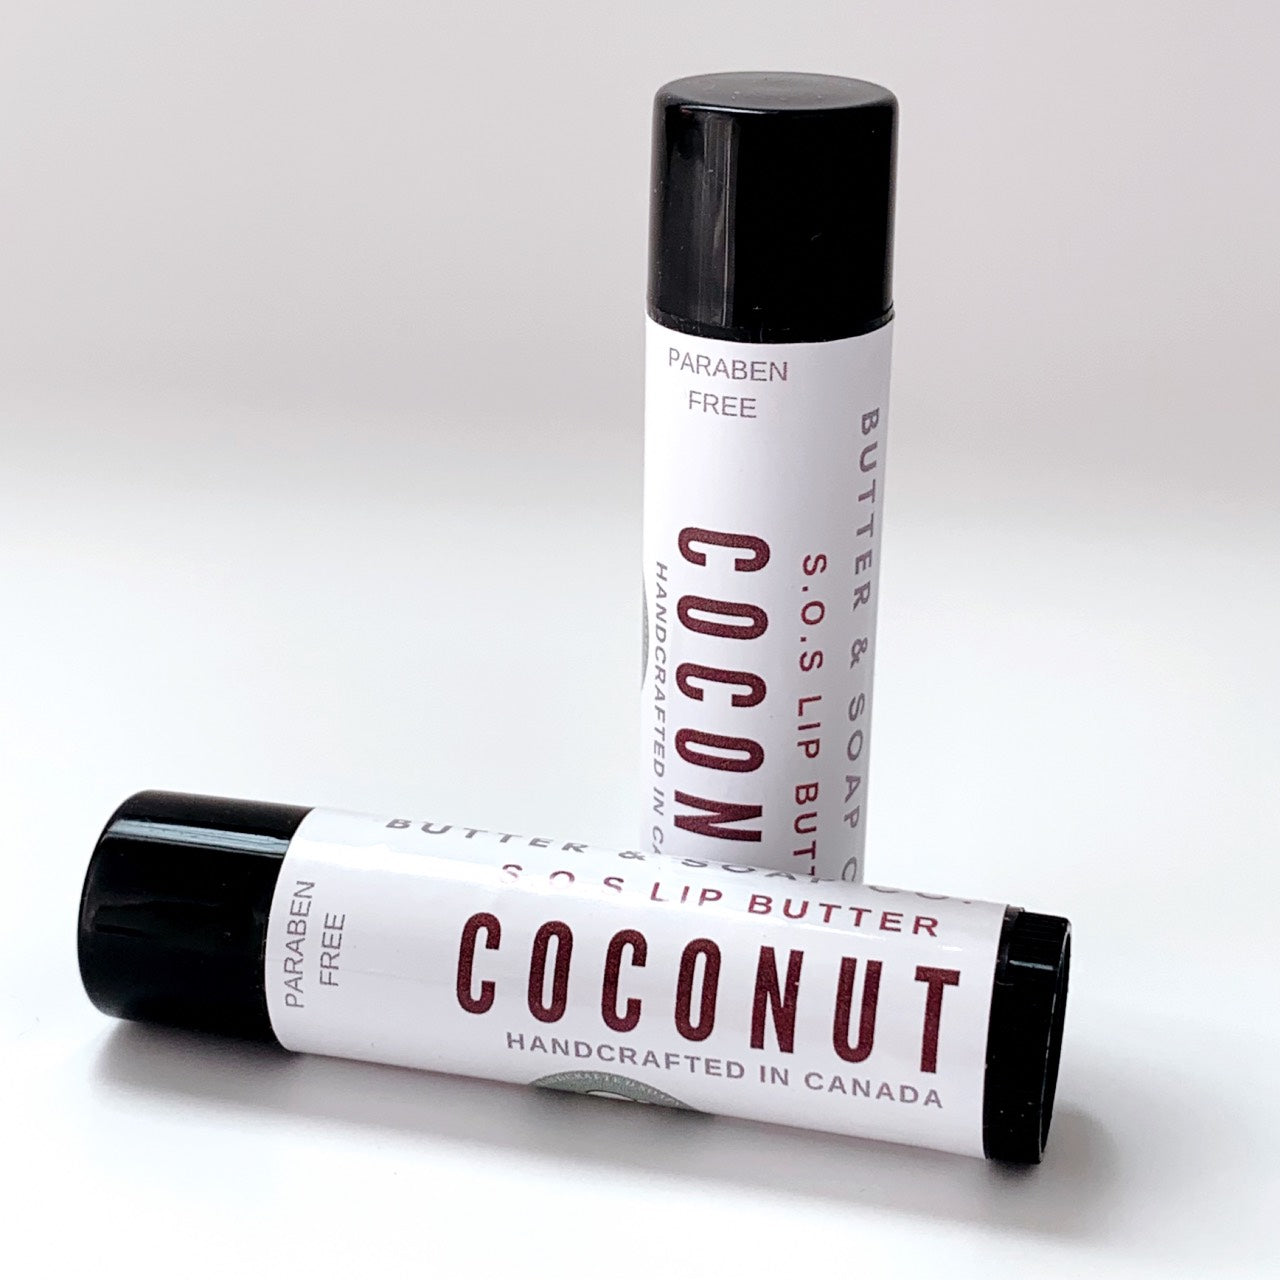 All Natural Cocoa Butter Lip Balm - Coconut